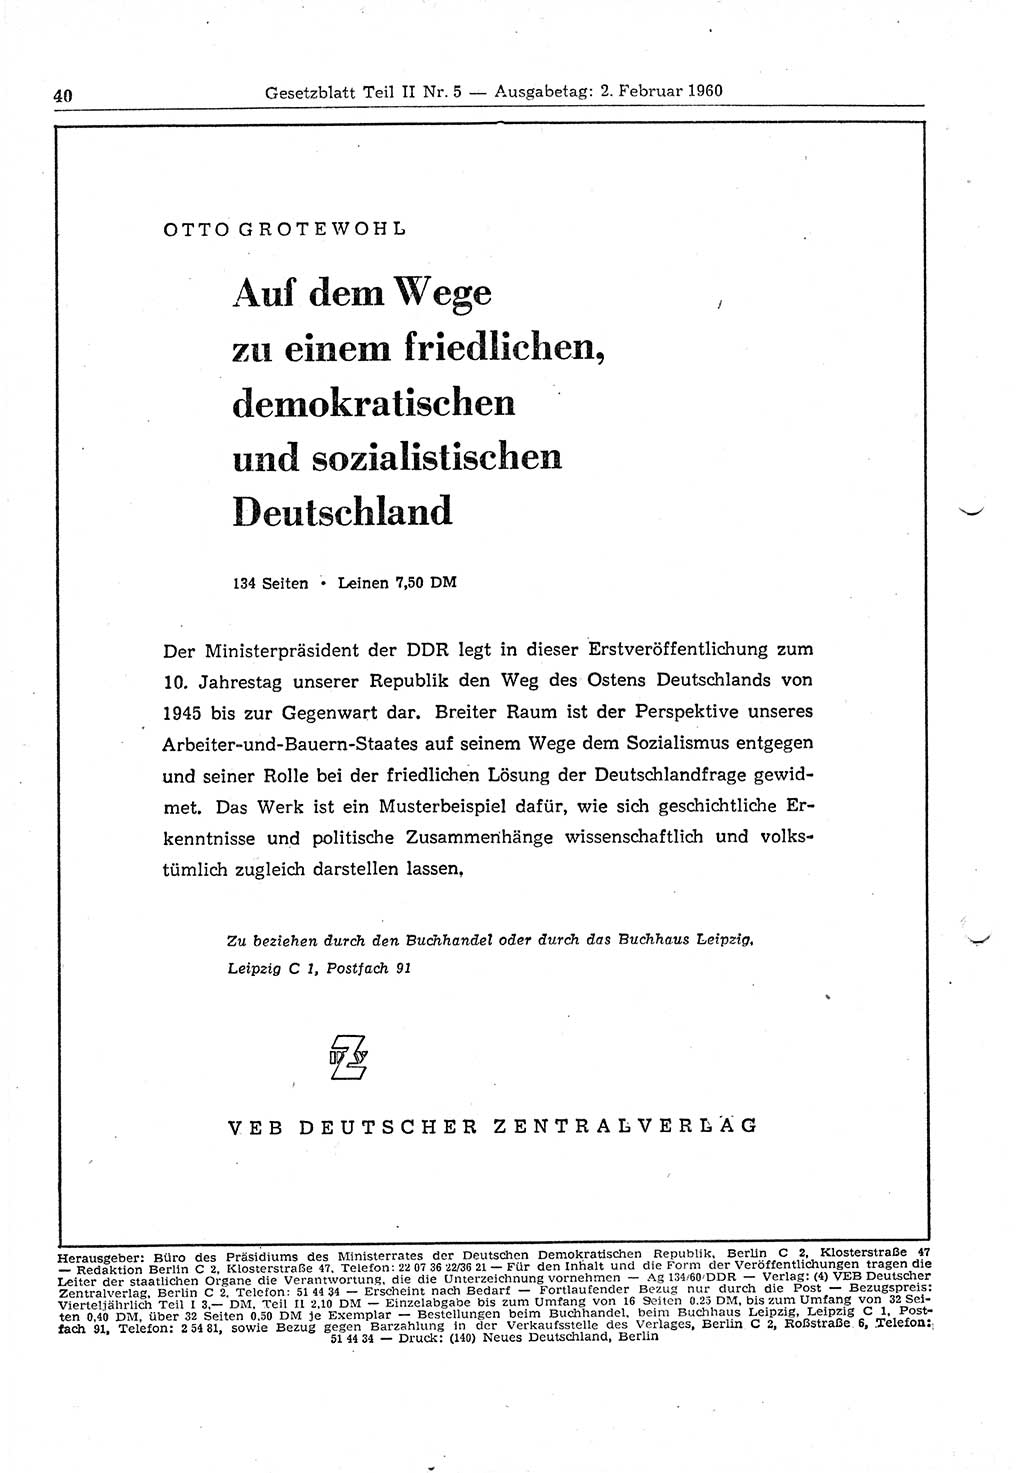 Gesetzblatt (GBl.) der Deutschen Demokratischen Republik (DDR) Teil ⅠⅠ 1960, Seite 40 (GBl. DDR ⅠⅠ 1960, S. 40)